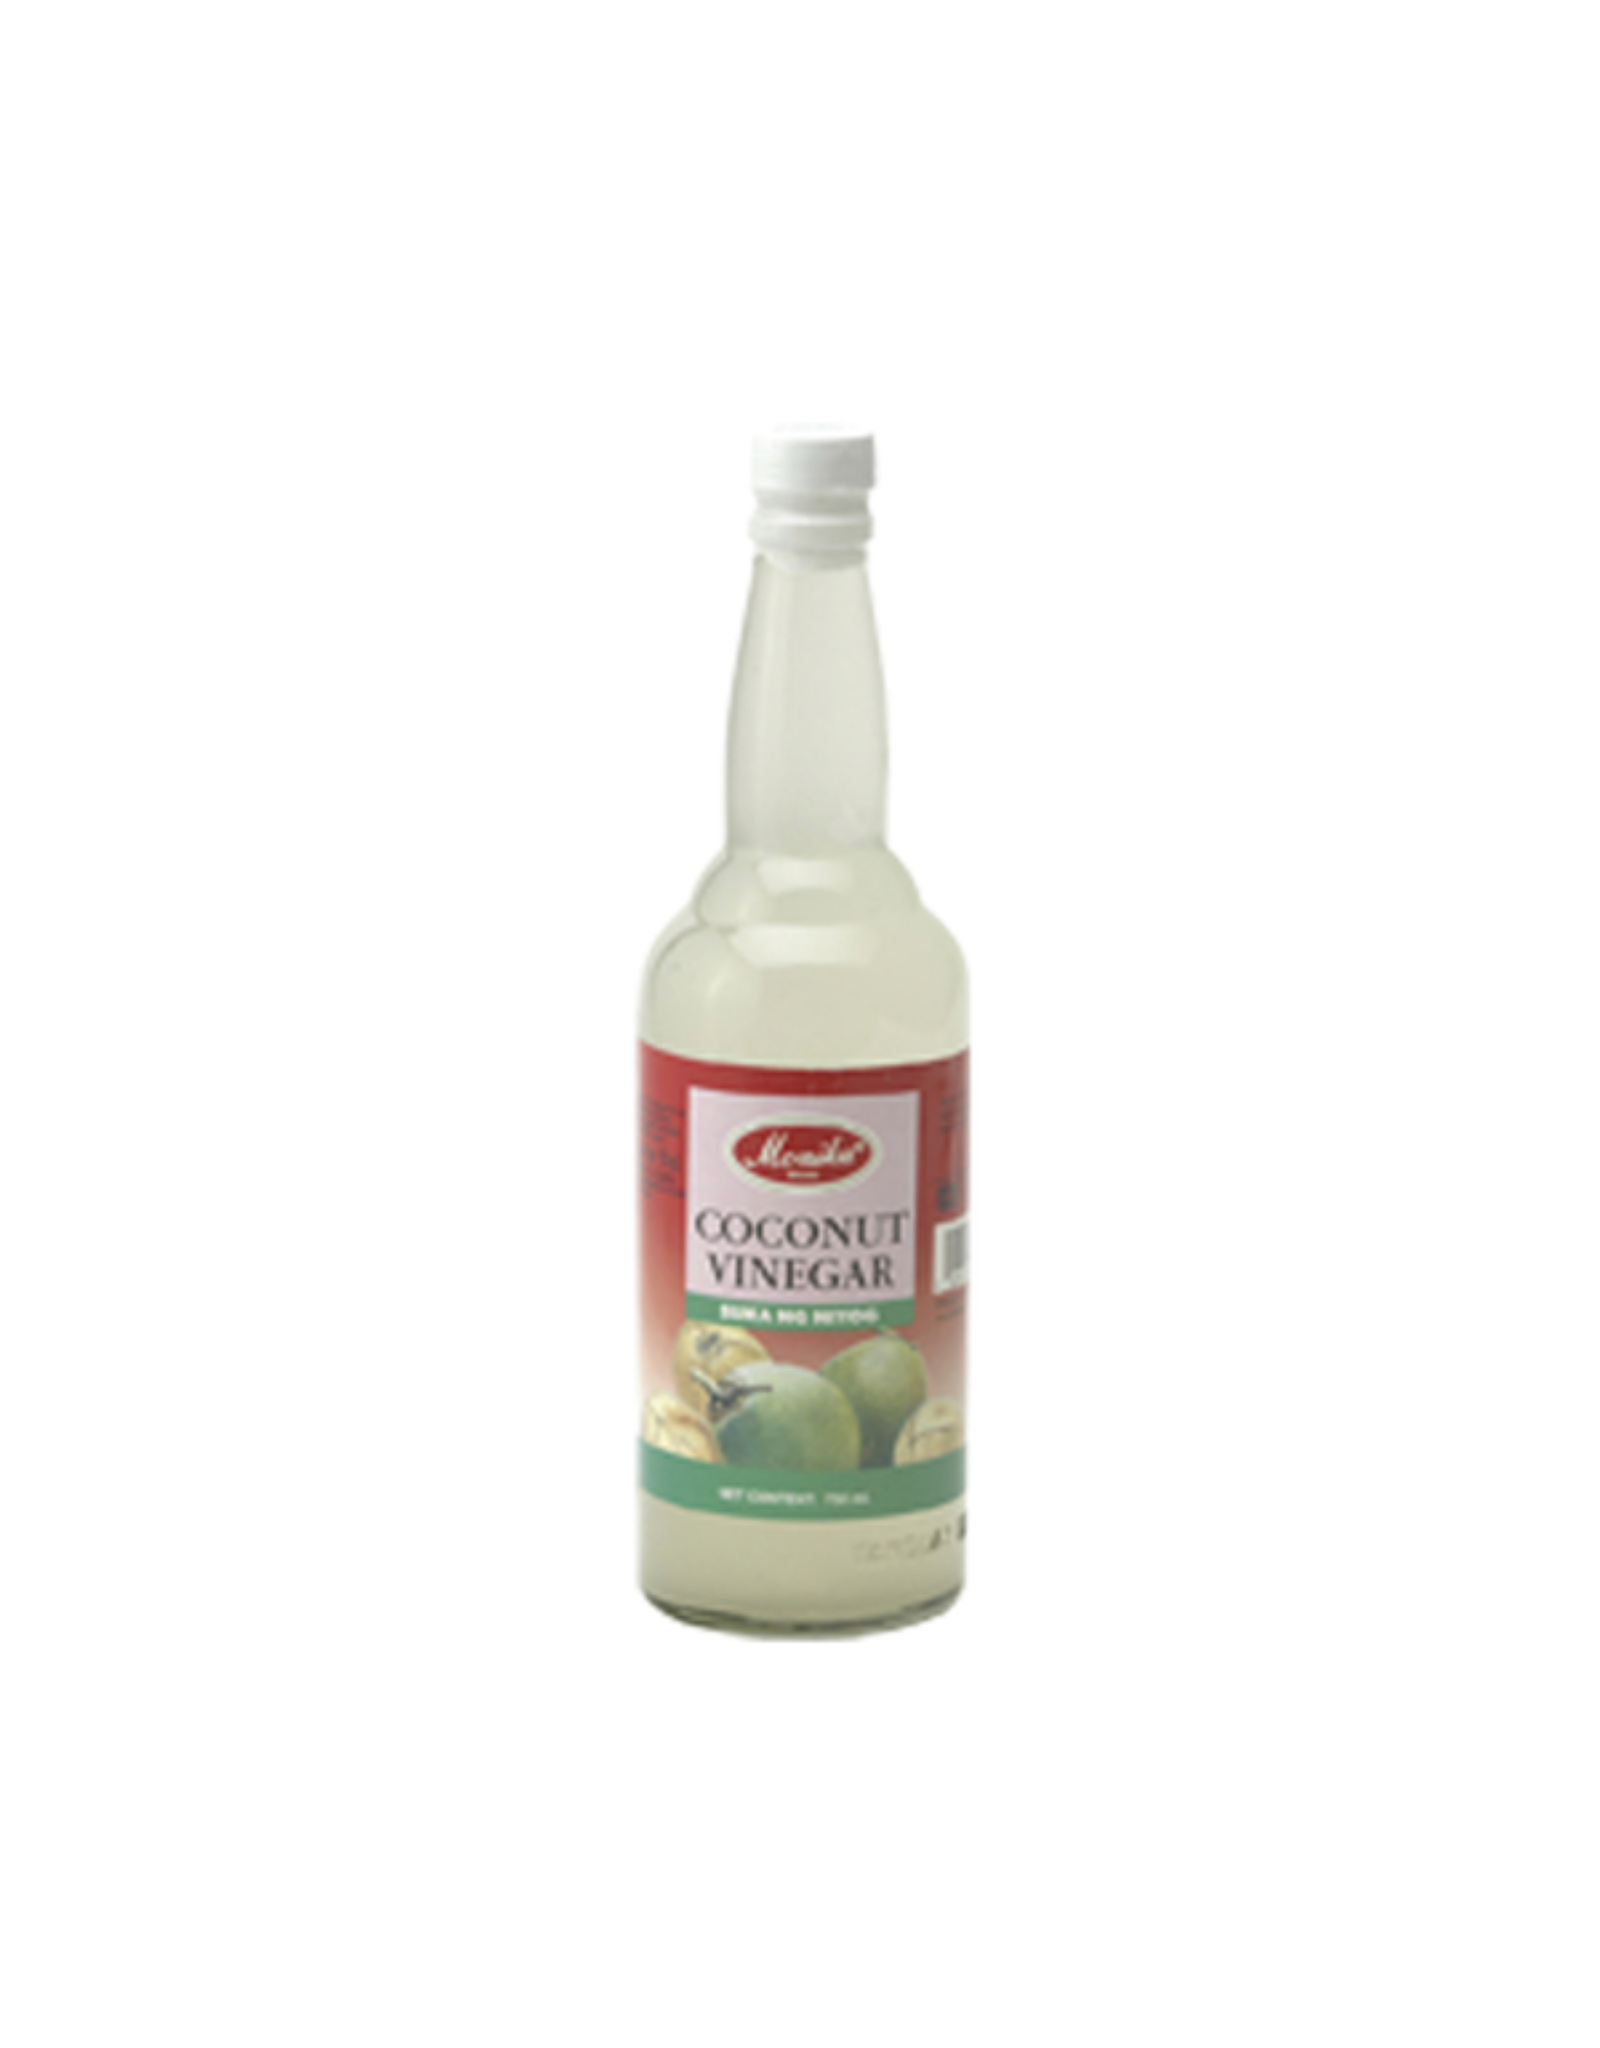 Monika Coconut Vinegar